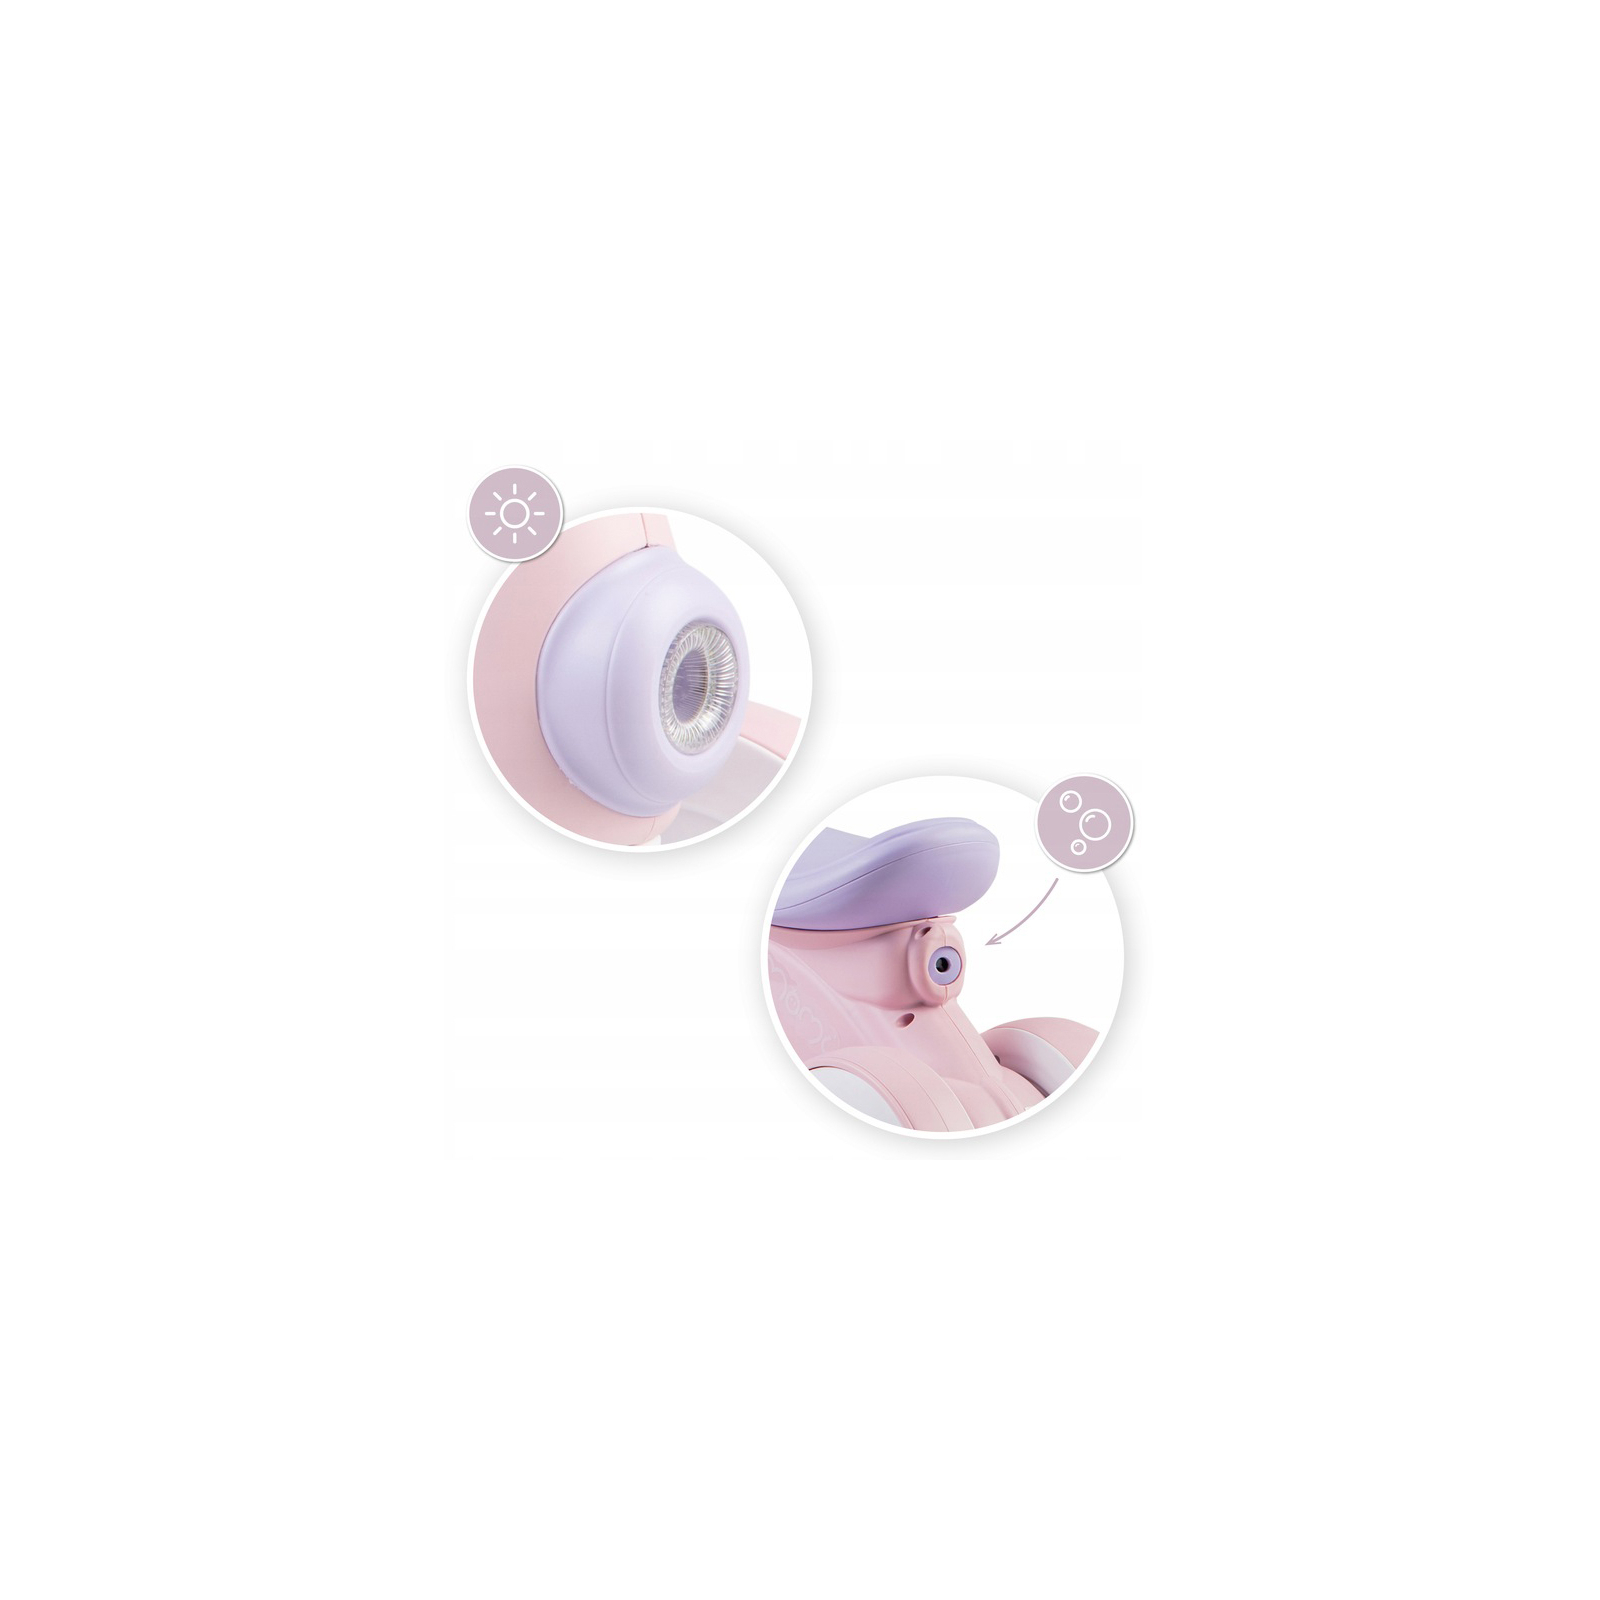 Беговел MoMi Tobis каталка, с пузырьками Pink (ROBI00042) изображение 5